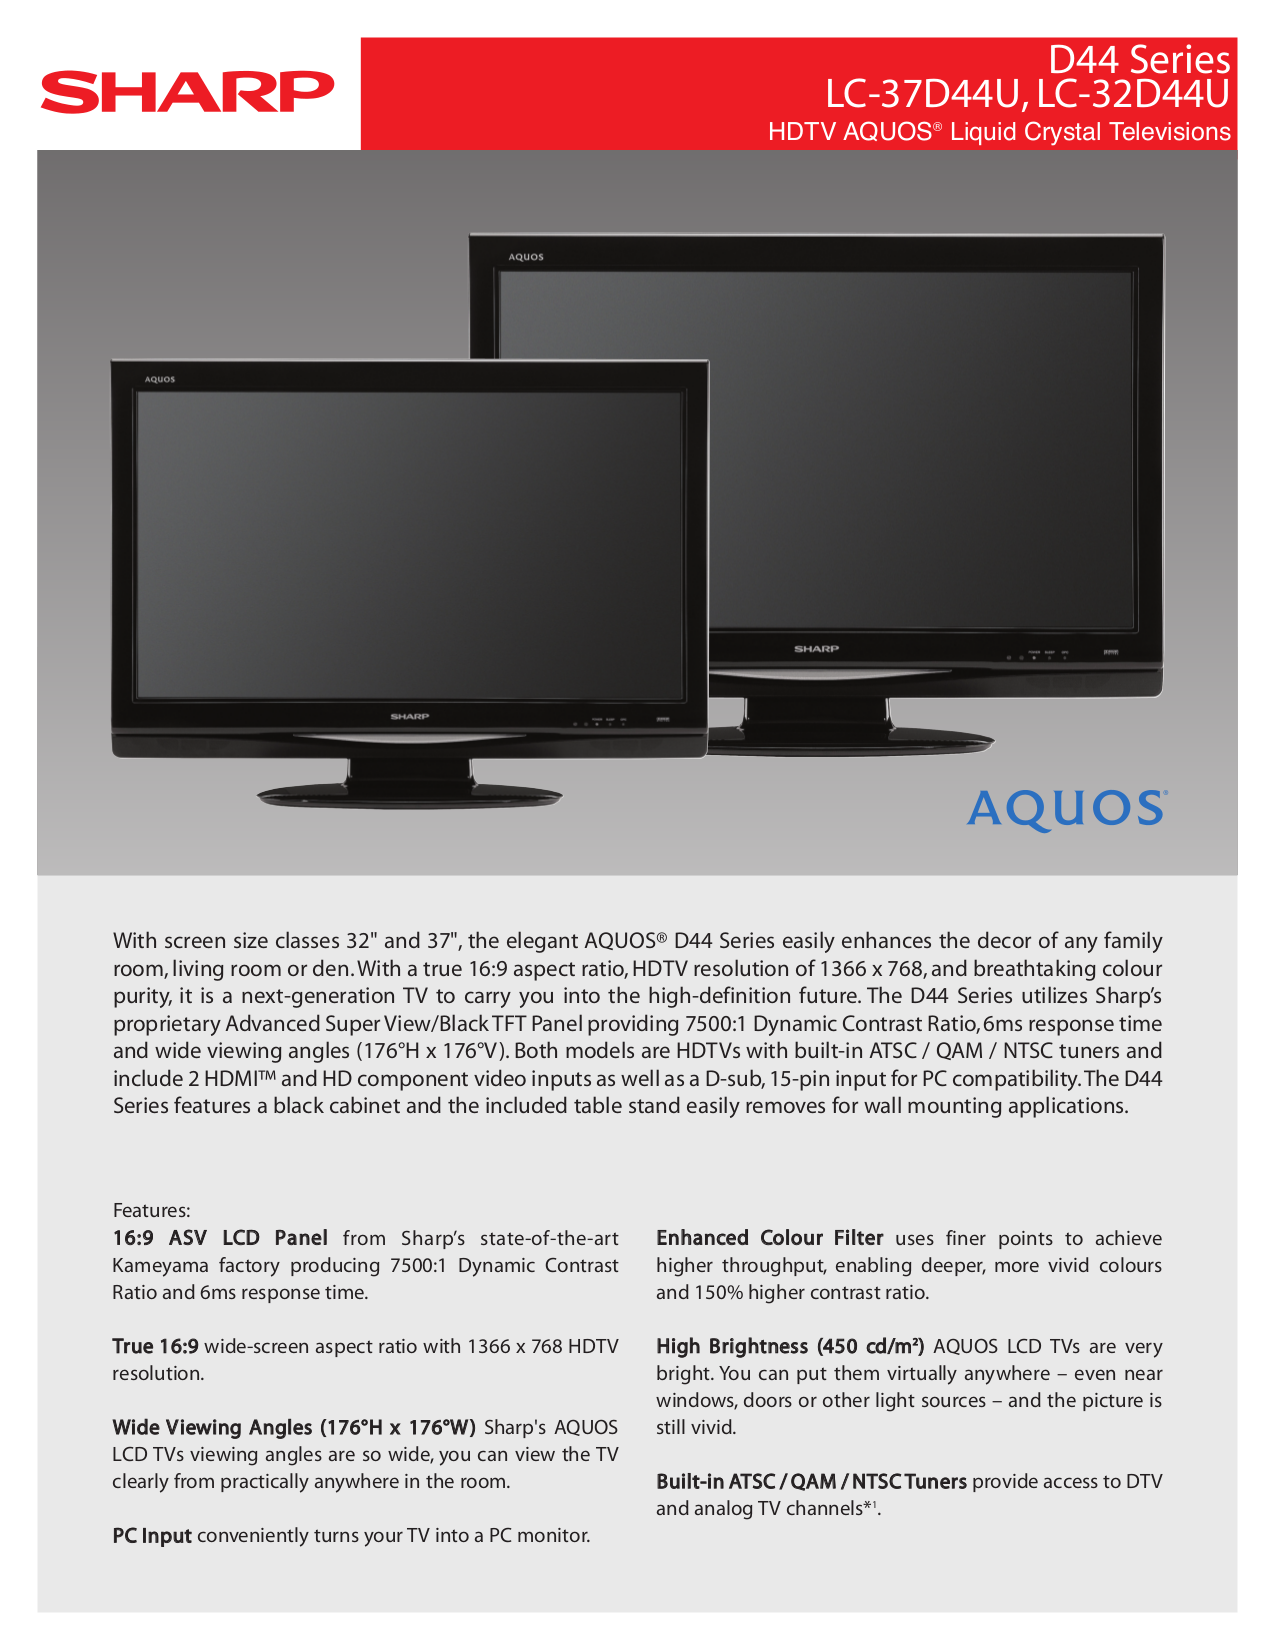 sharp aquos 3d tv manual